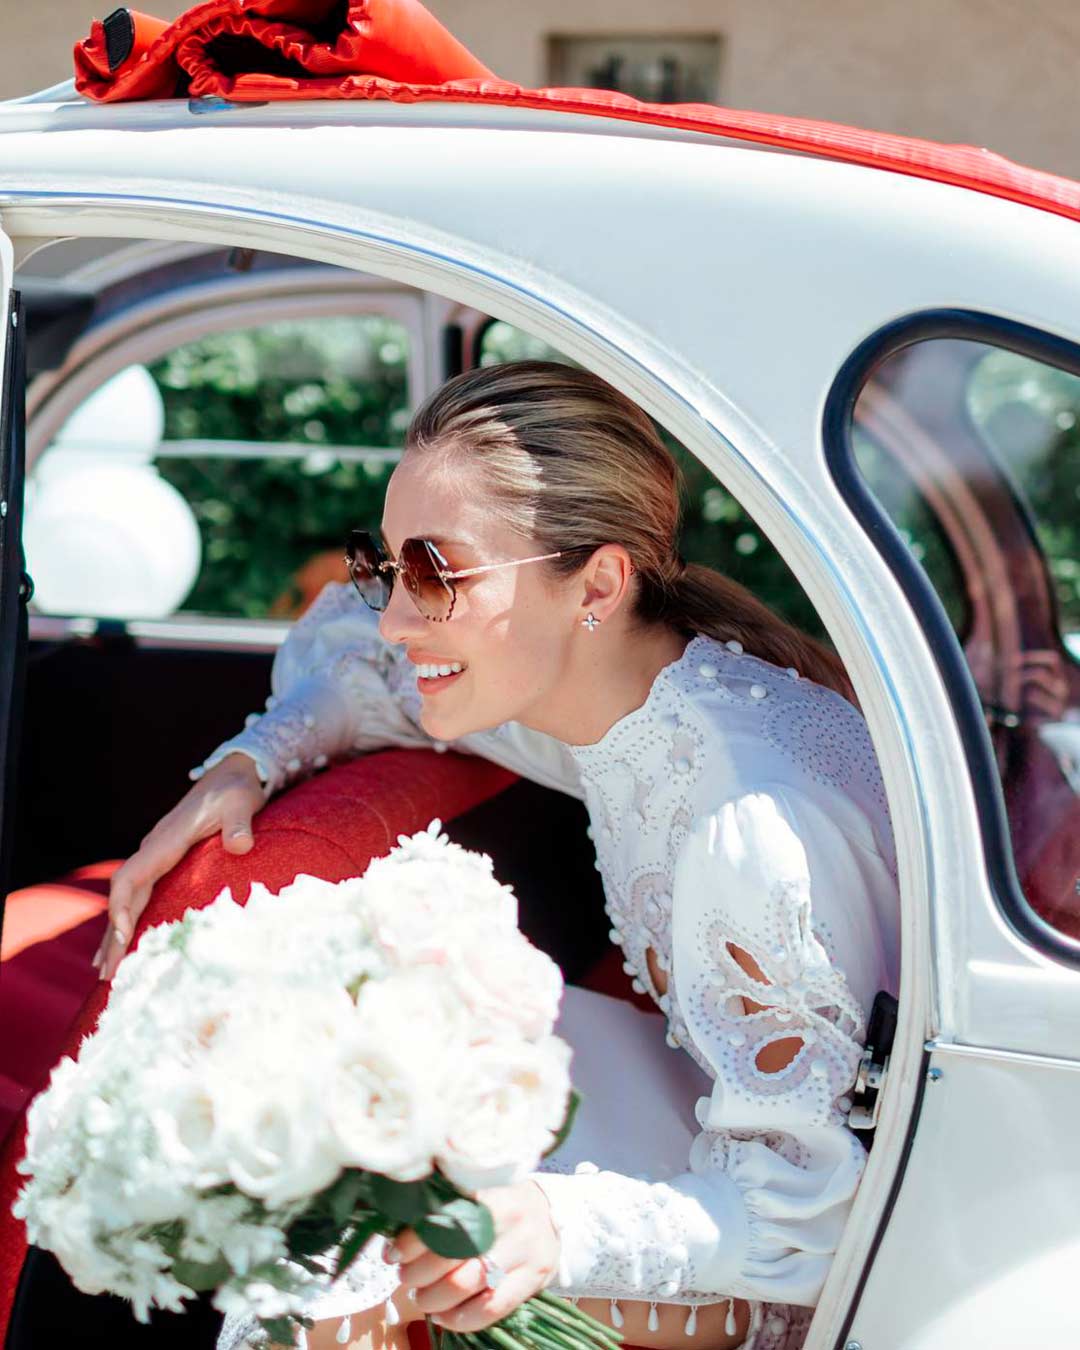 covid wedding ideas bride car through